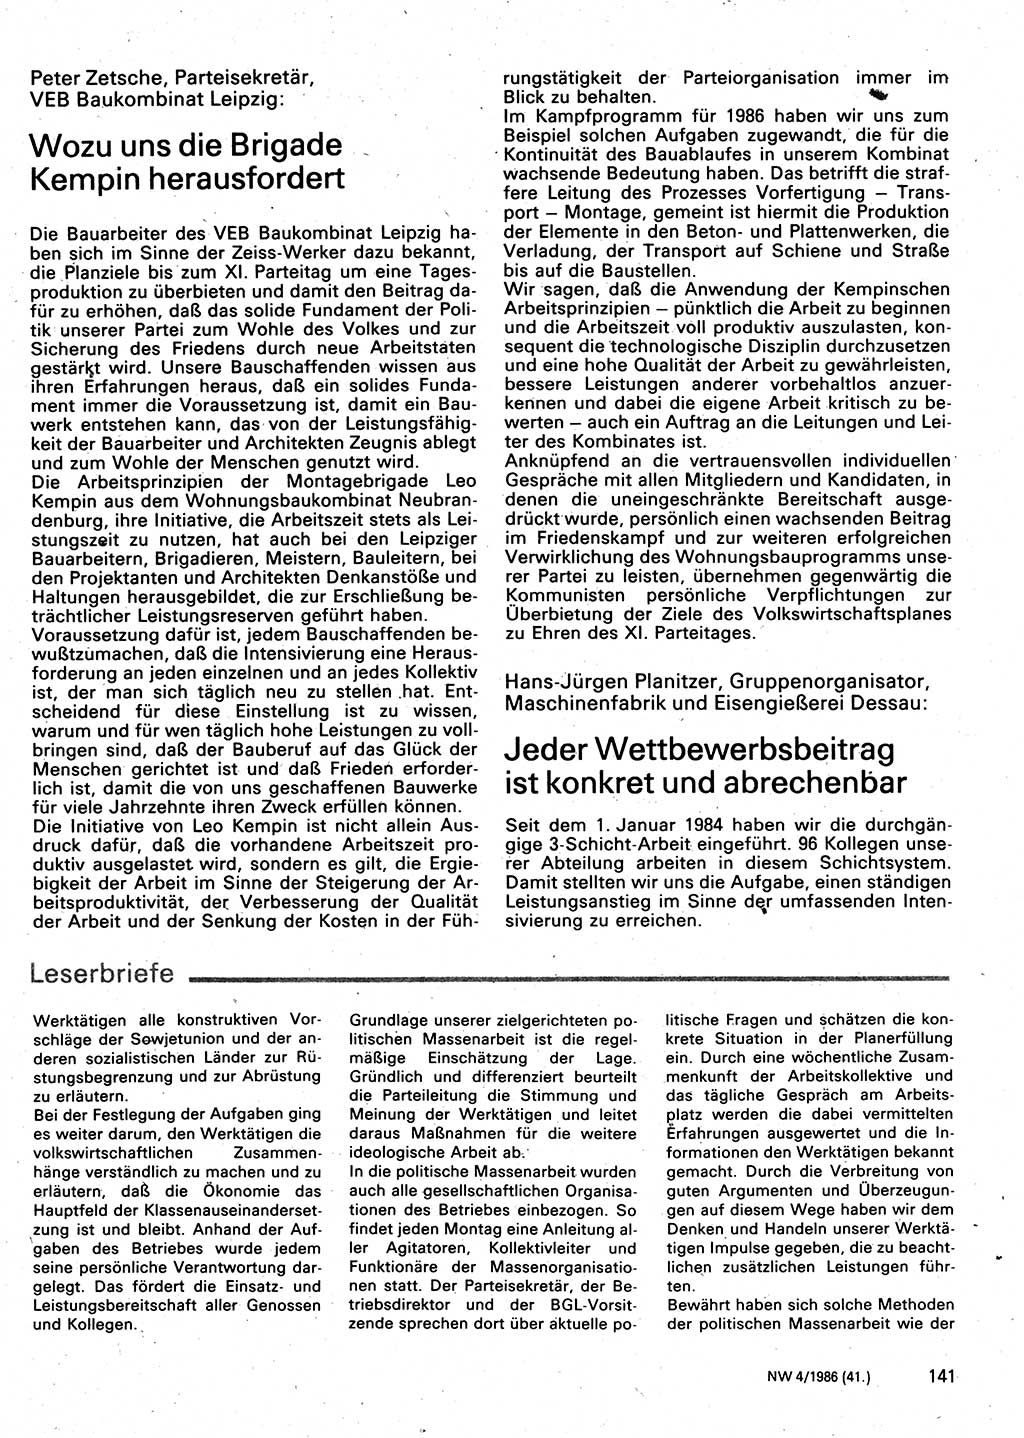 Neuer Weg (NW), Organ des Zentralkomitees (ZK) der SED (Sozialistische Einheitspartei Deutschlands) für Fragen des Parteilebens, 41. Jahrgang [Deutsche Demokratische Republik (DDR)] 1986, Seite 141 (NW ZK SED DDR 1986, S. 141)